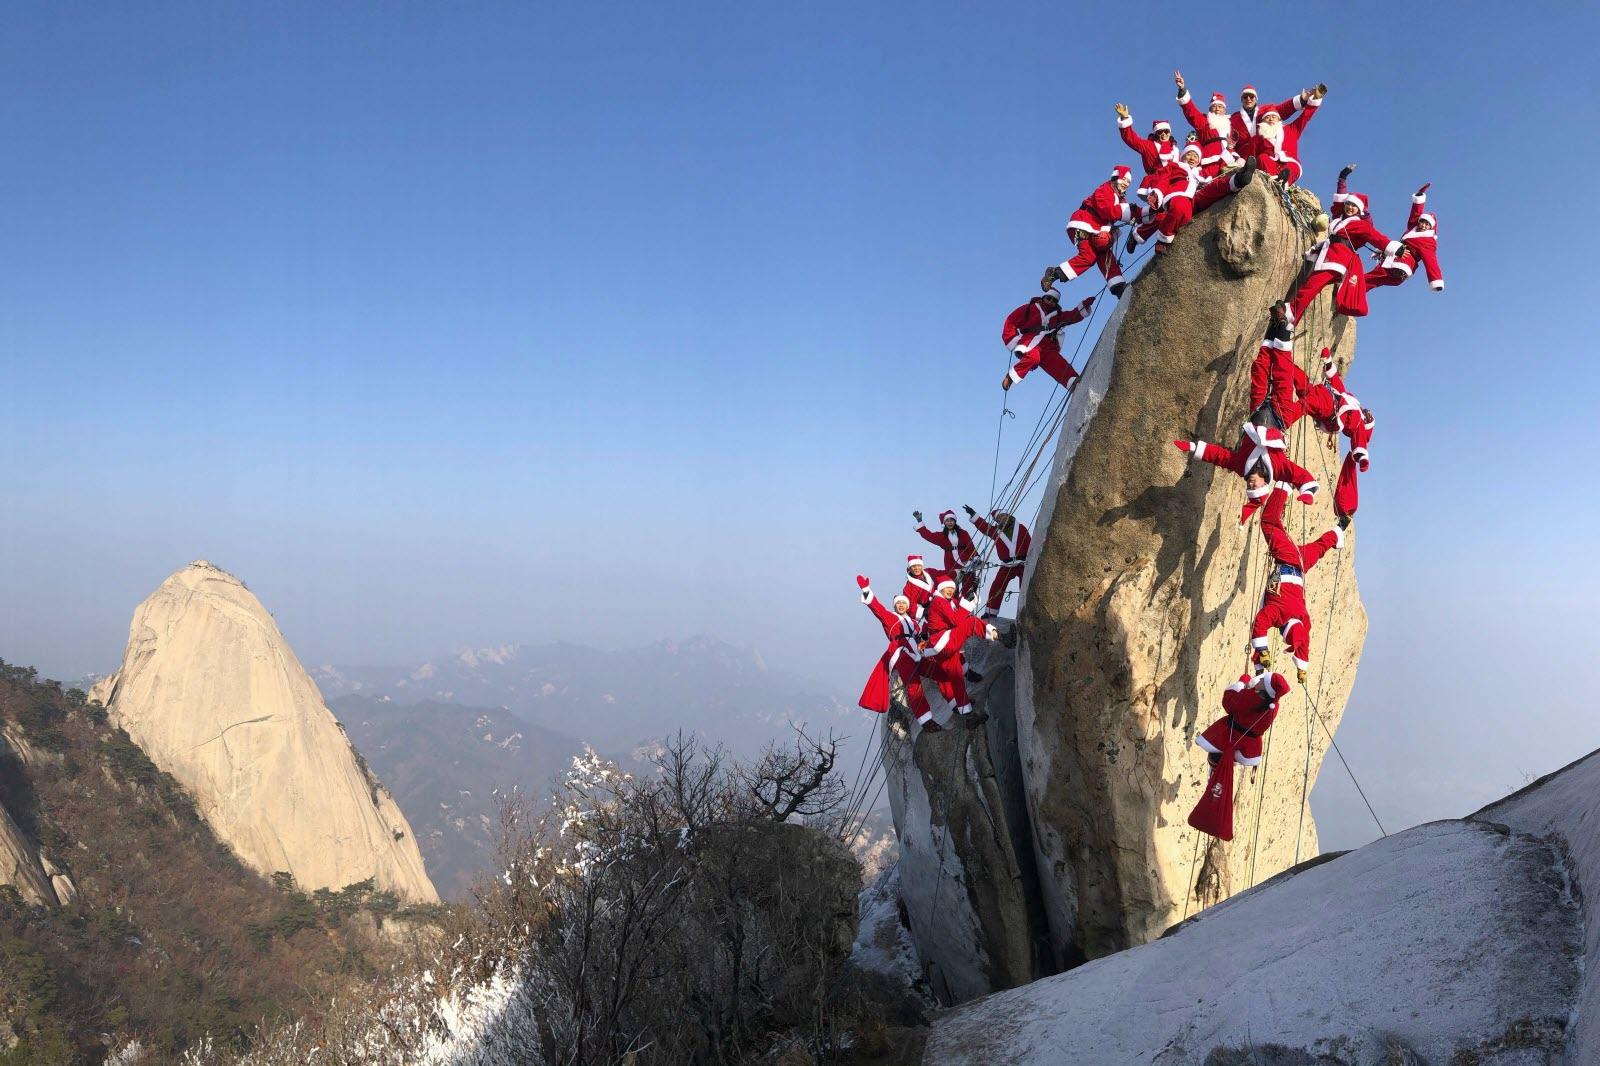 En coree du sud des grimpeurs habilles en pere noel ont gravi la montagne buckan a seoul photo yonhap yonhap afp 1577034778